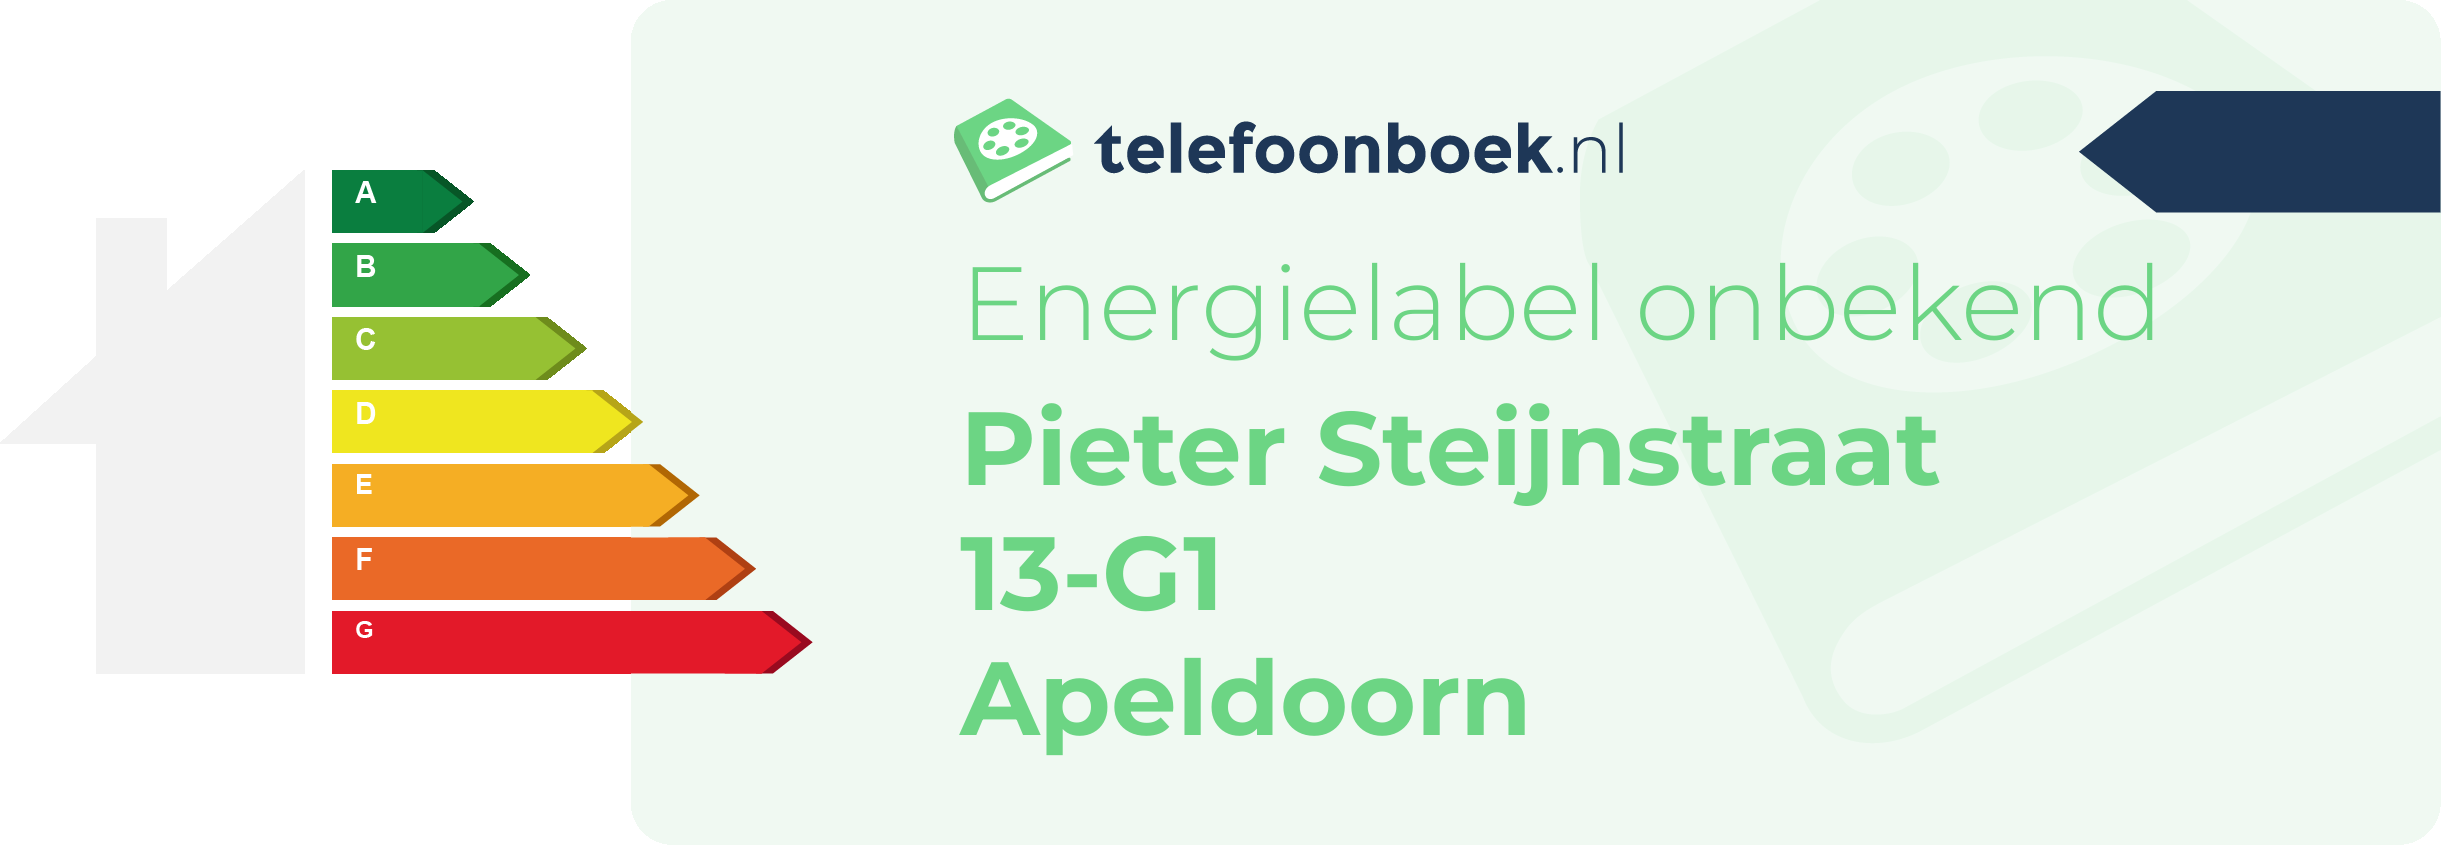 Energielabel Pieter Steijnstraat 13-G1 Apeldoorn